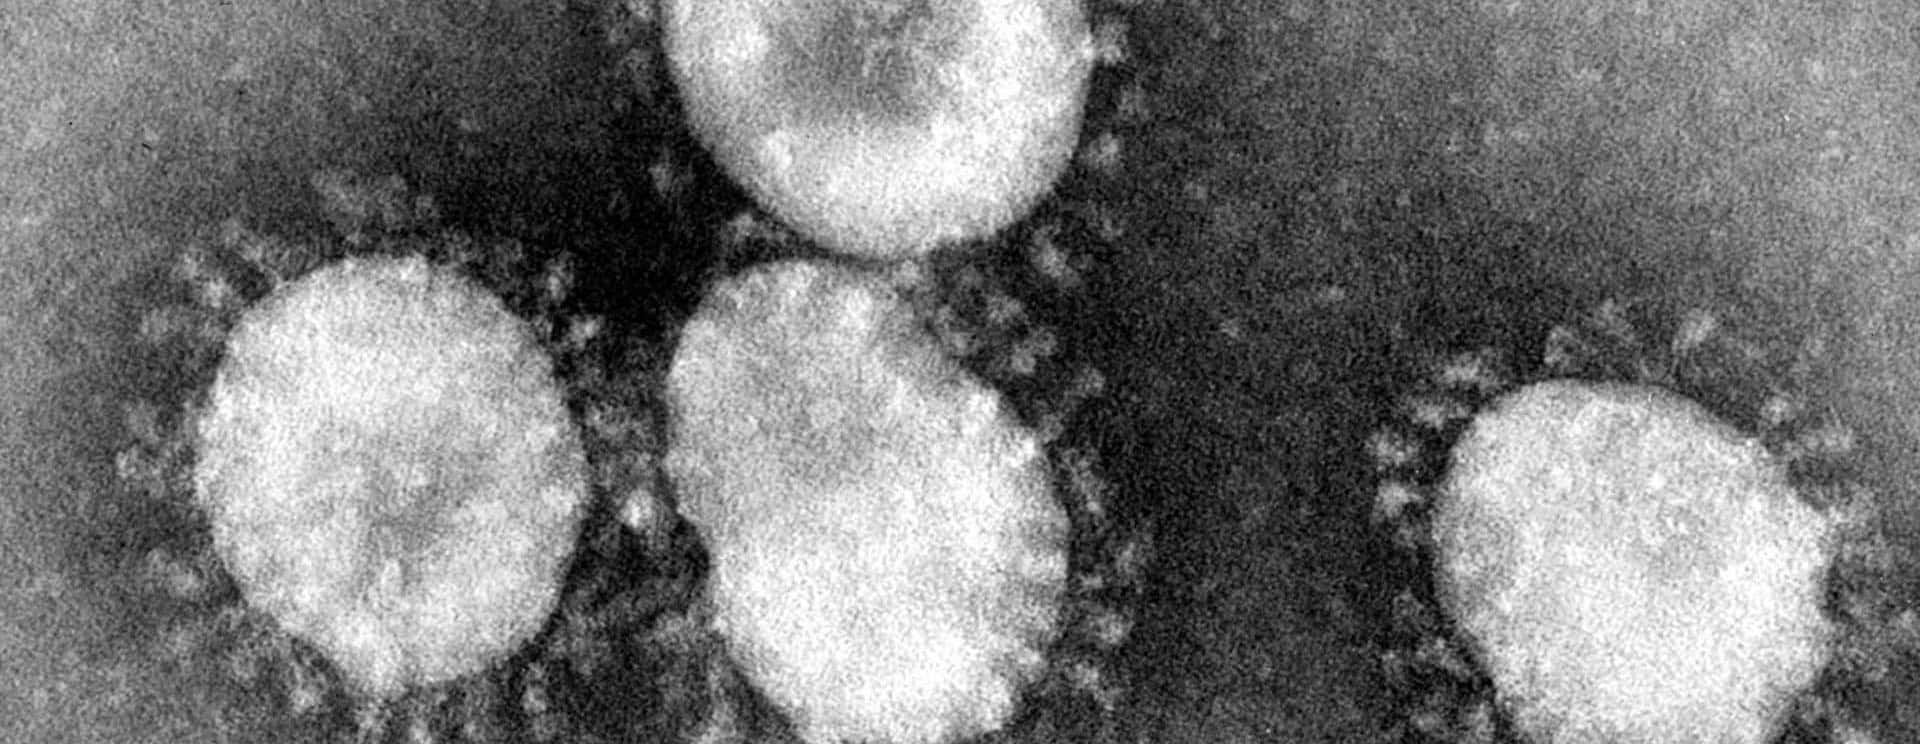 coronaviruses-jpg-44